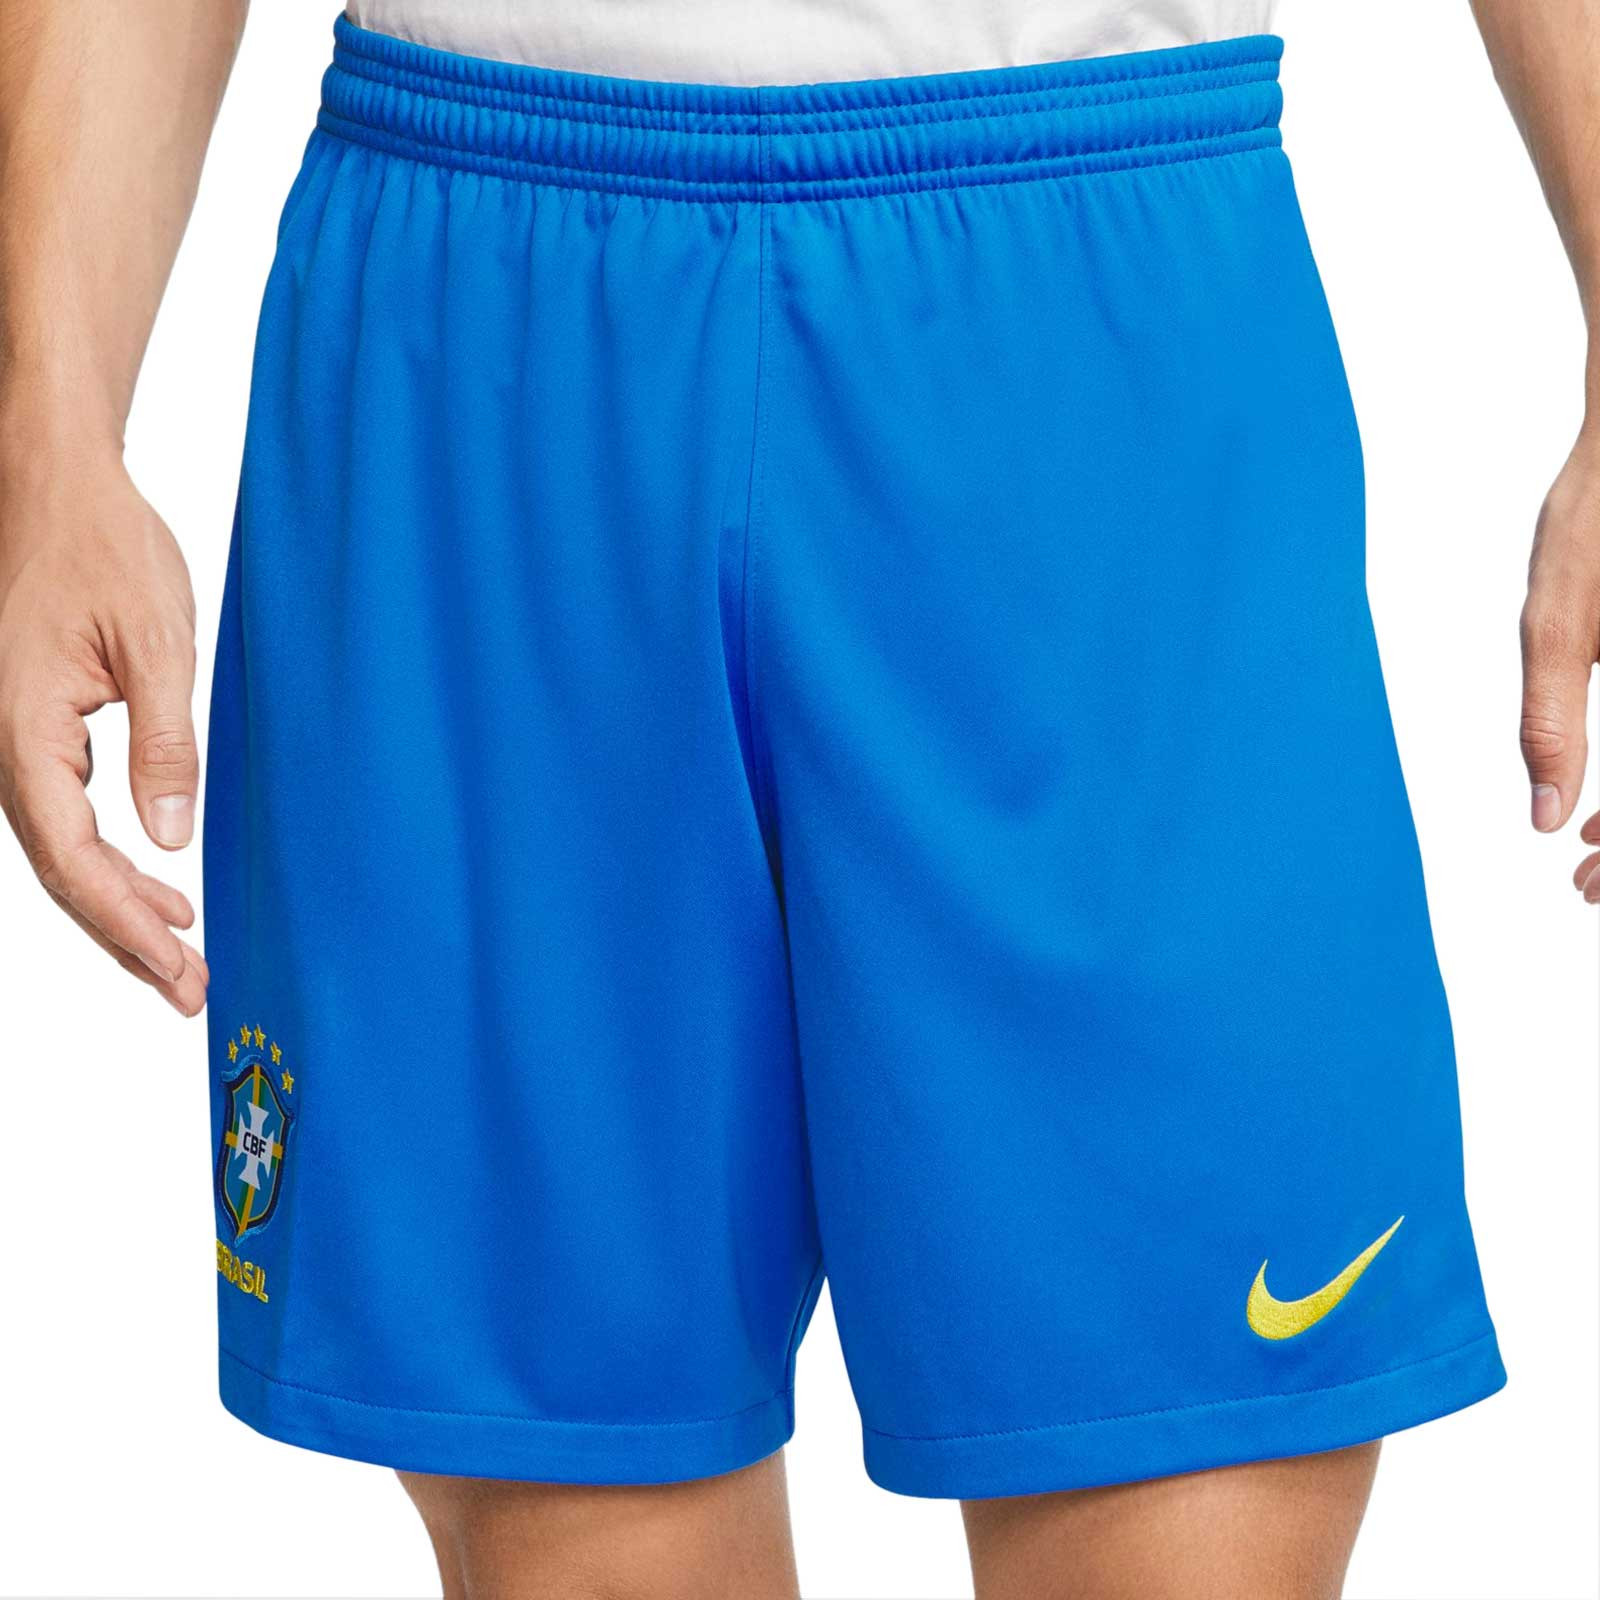 Шорты сборной. Шорты Nike. Шорты сборной Бразилии. Шорты Nike Бразилии. Форма Бразилии шорты.